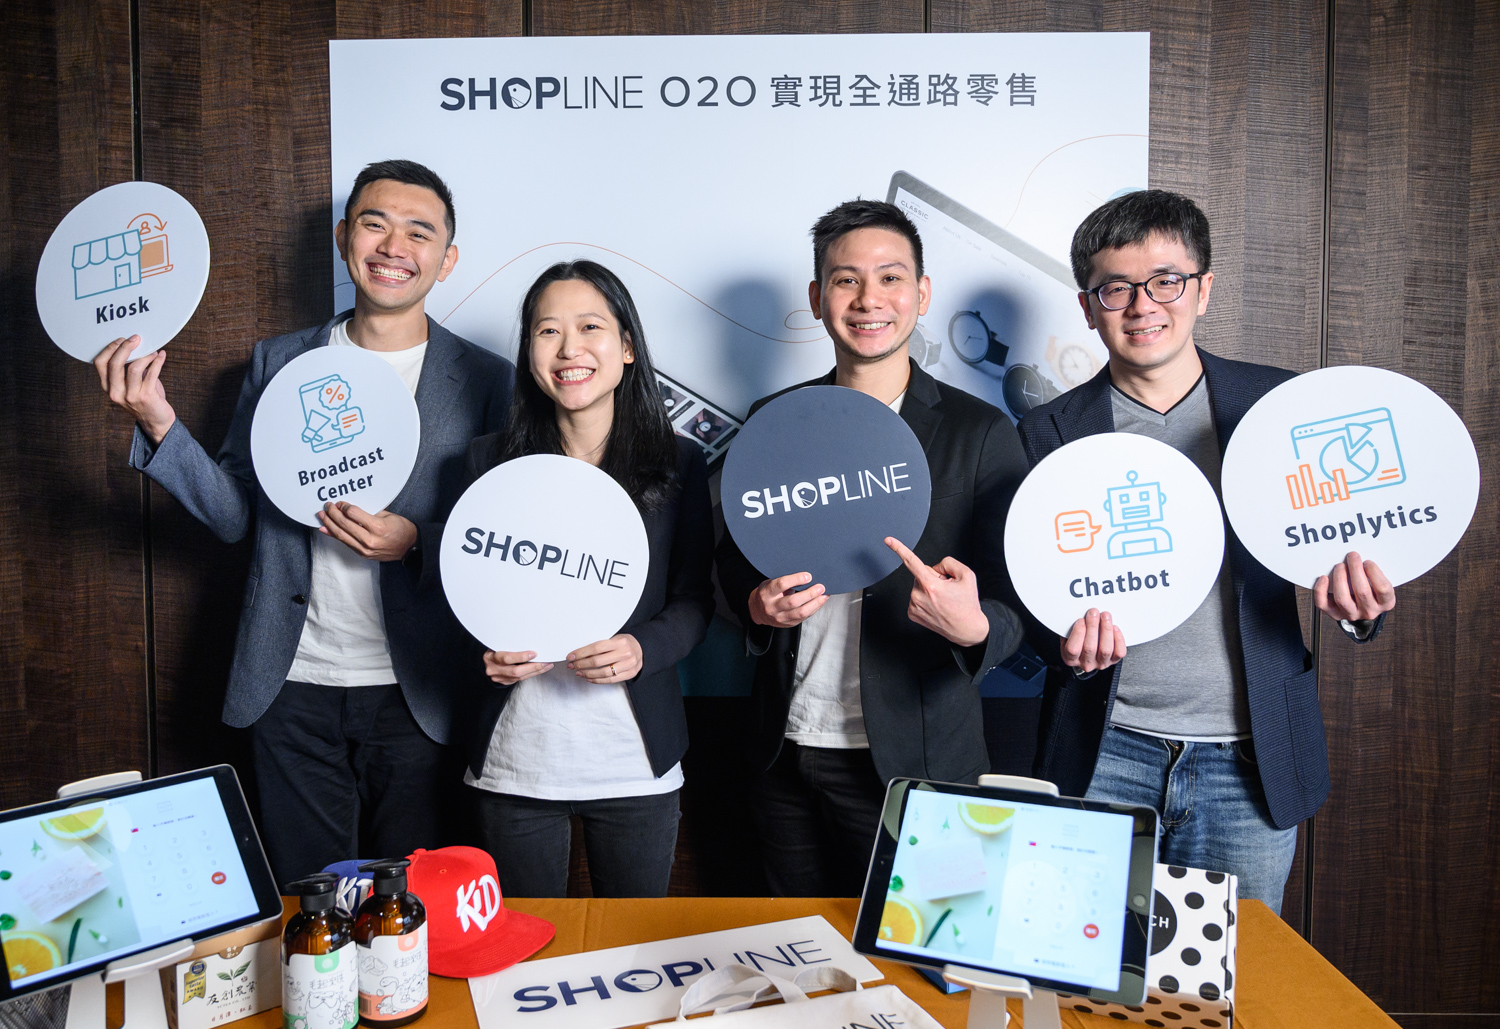 助台灣商家完成虛實通路整合 SHOPLINE收購WAPOS再推O2O新方案